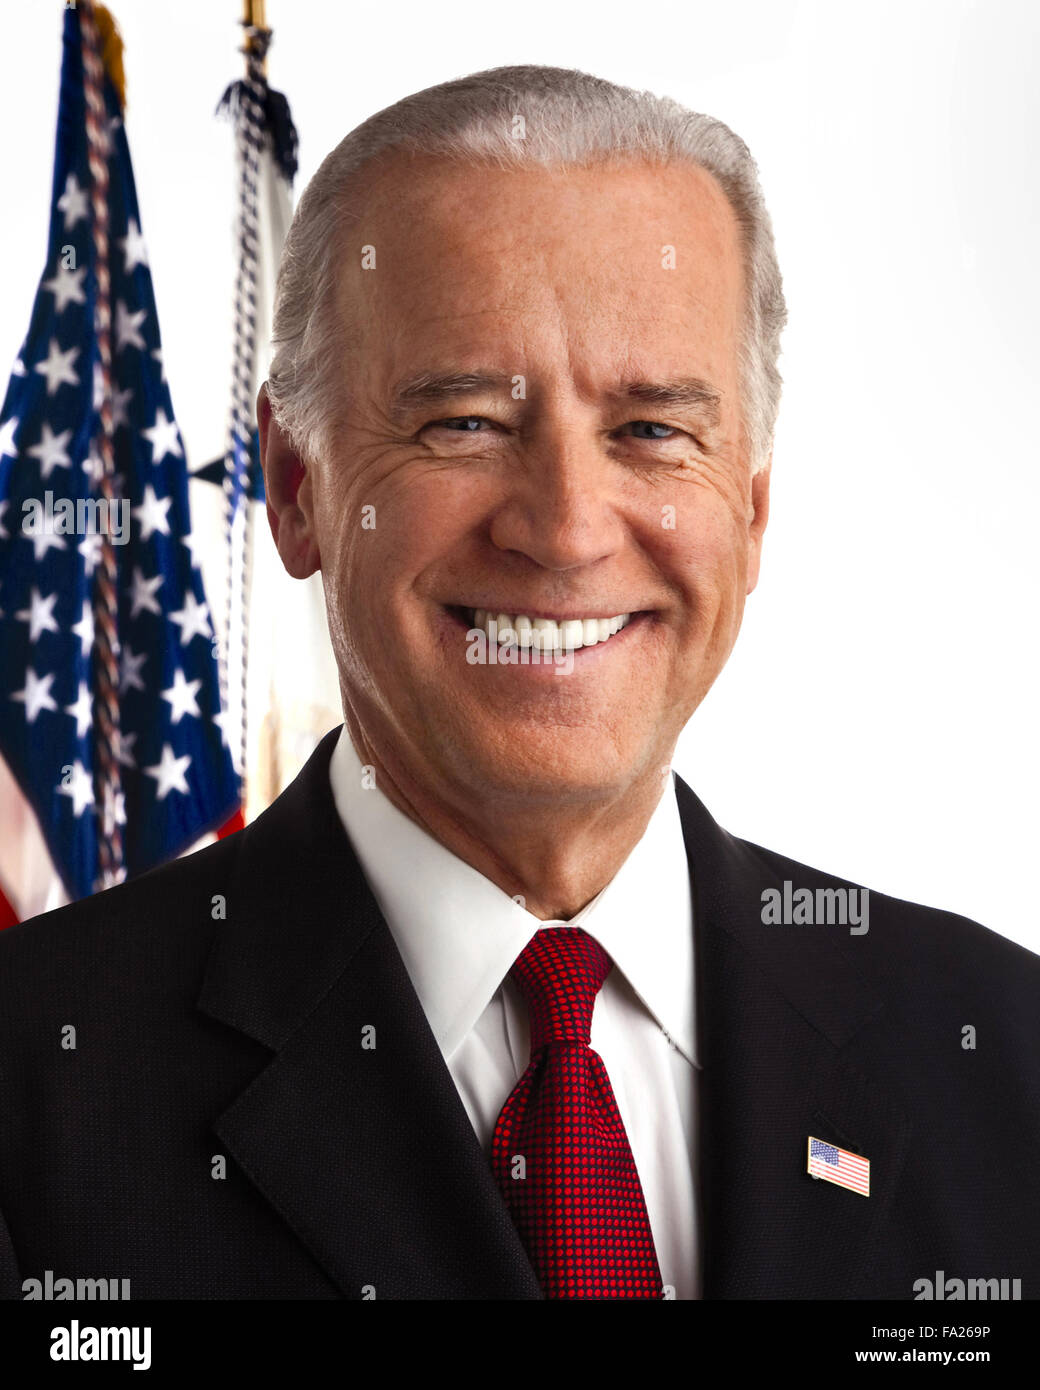 Joseph Robinette "" Joe Biden, Jr. americano che è il quarantasettesimo Vice Presidente degli Stati Uniti. Solo uso editoriale Foto Stock